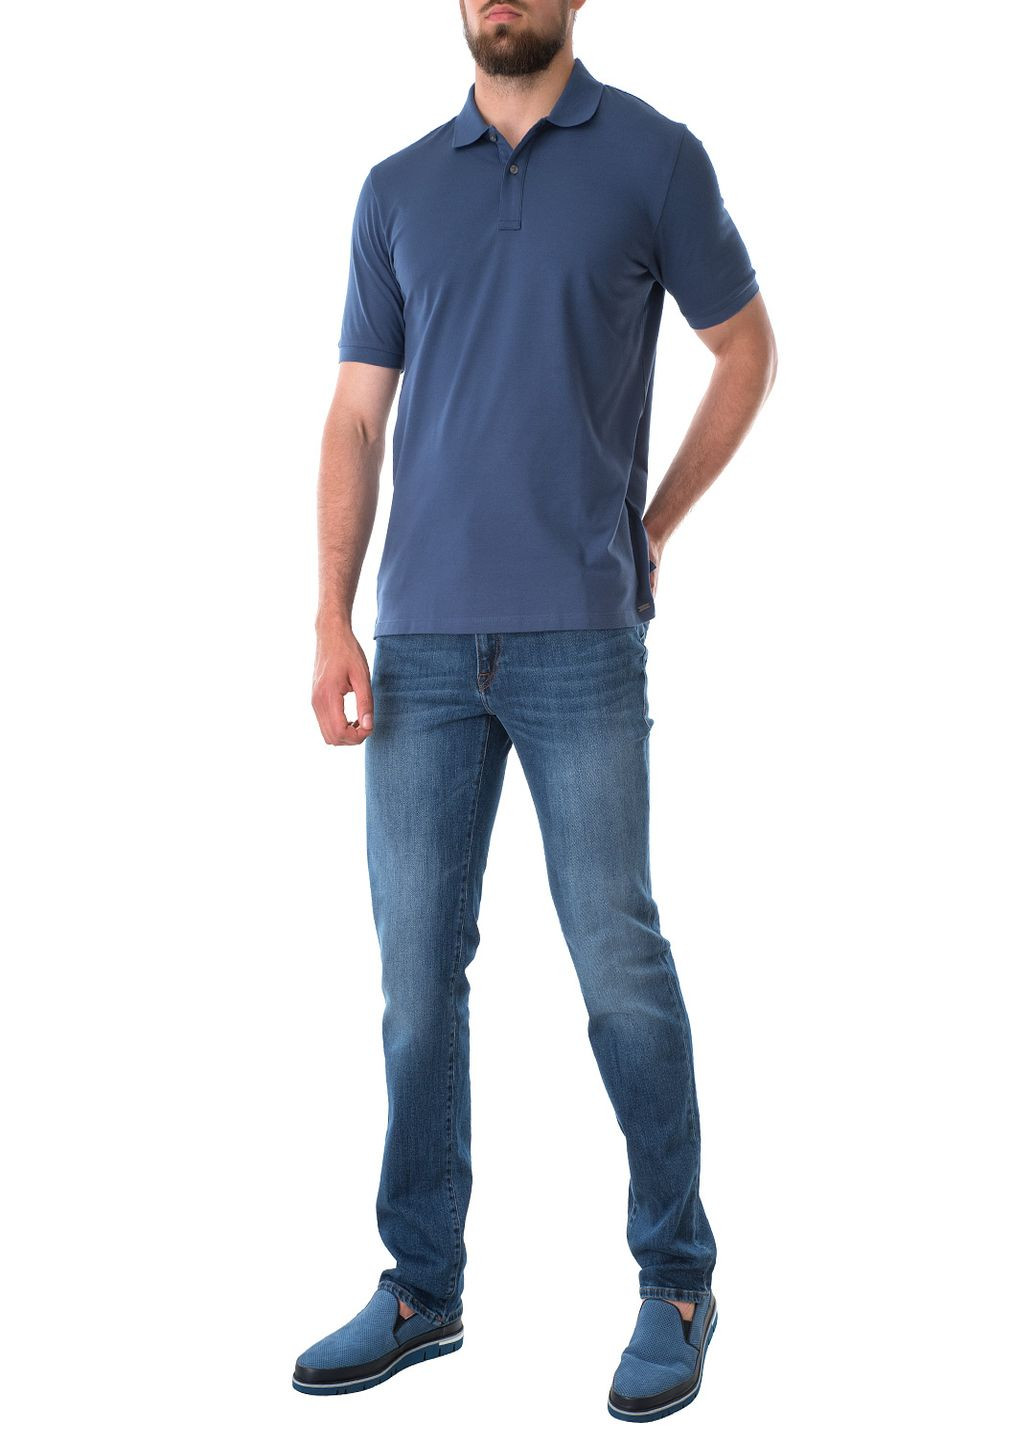 Синяя футболка-поло для мужчин Olymp однотонная